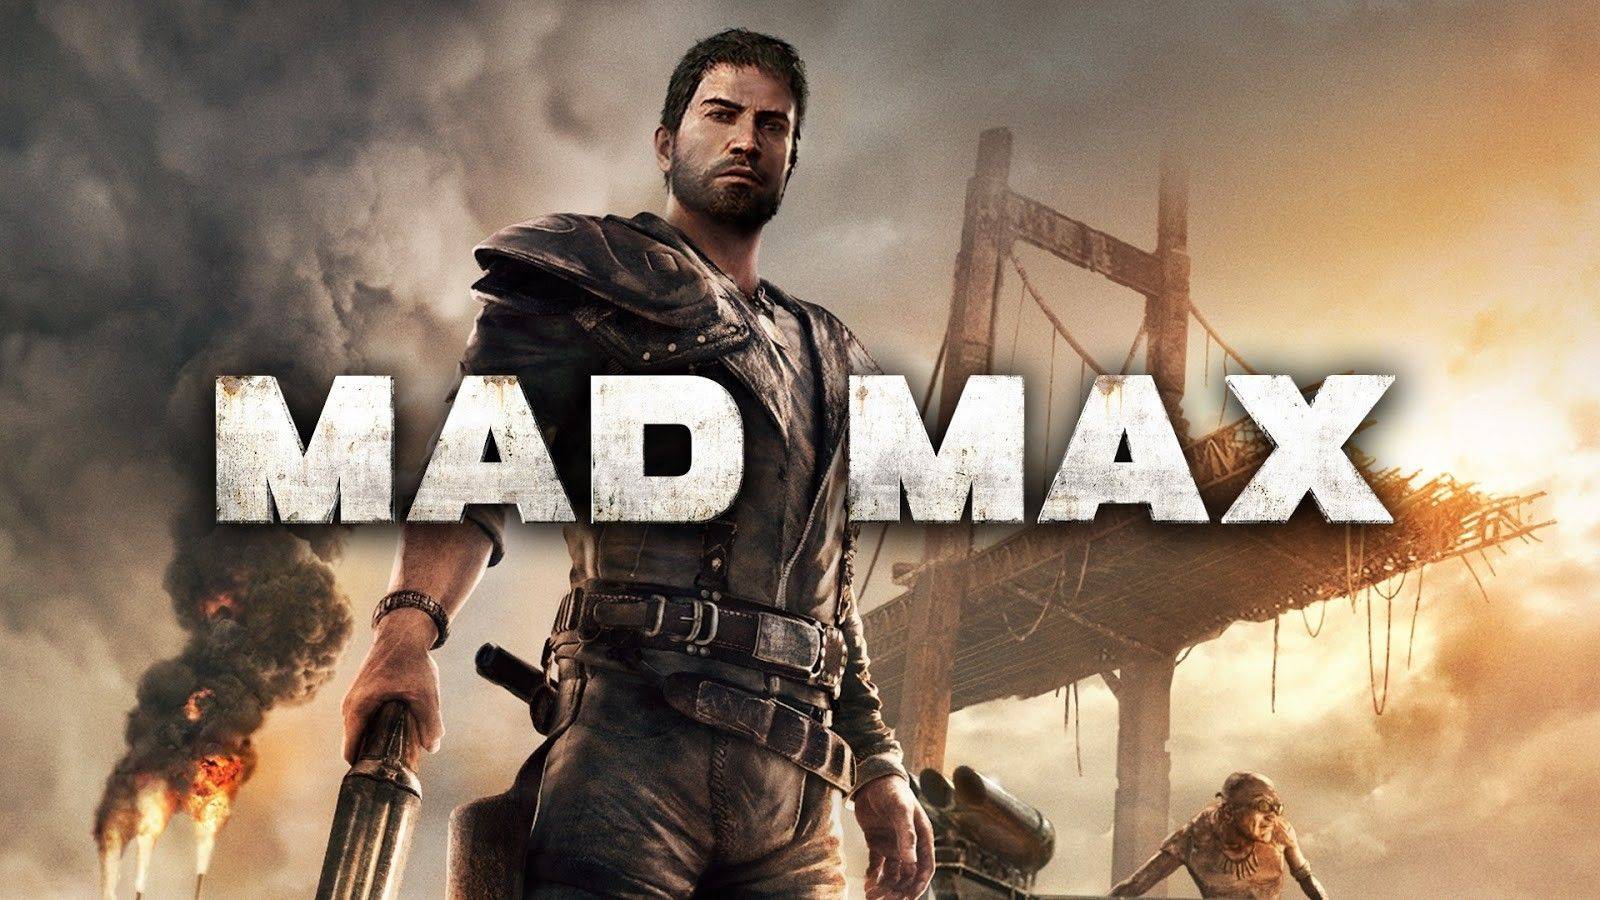 БЕЗУМНЫЙ МАКС | Mad Max #1